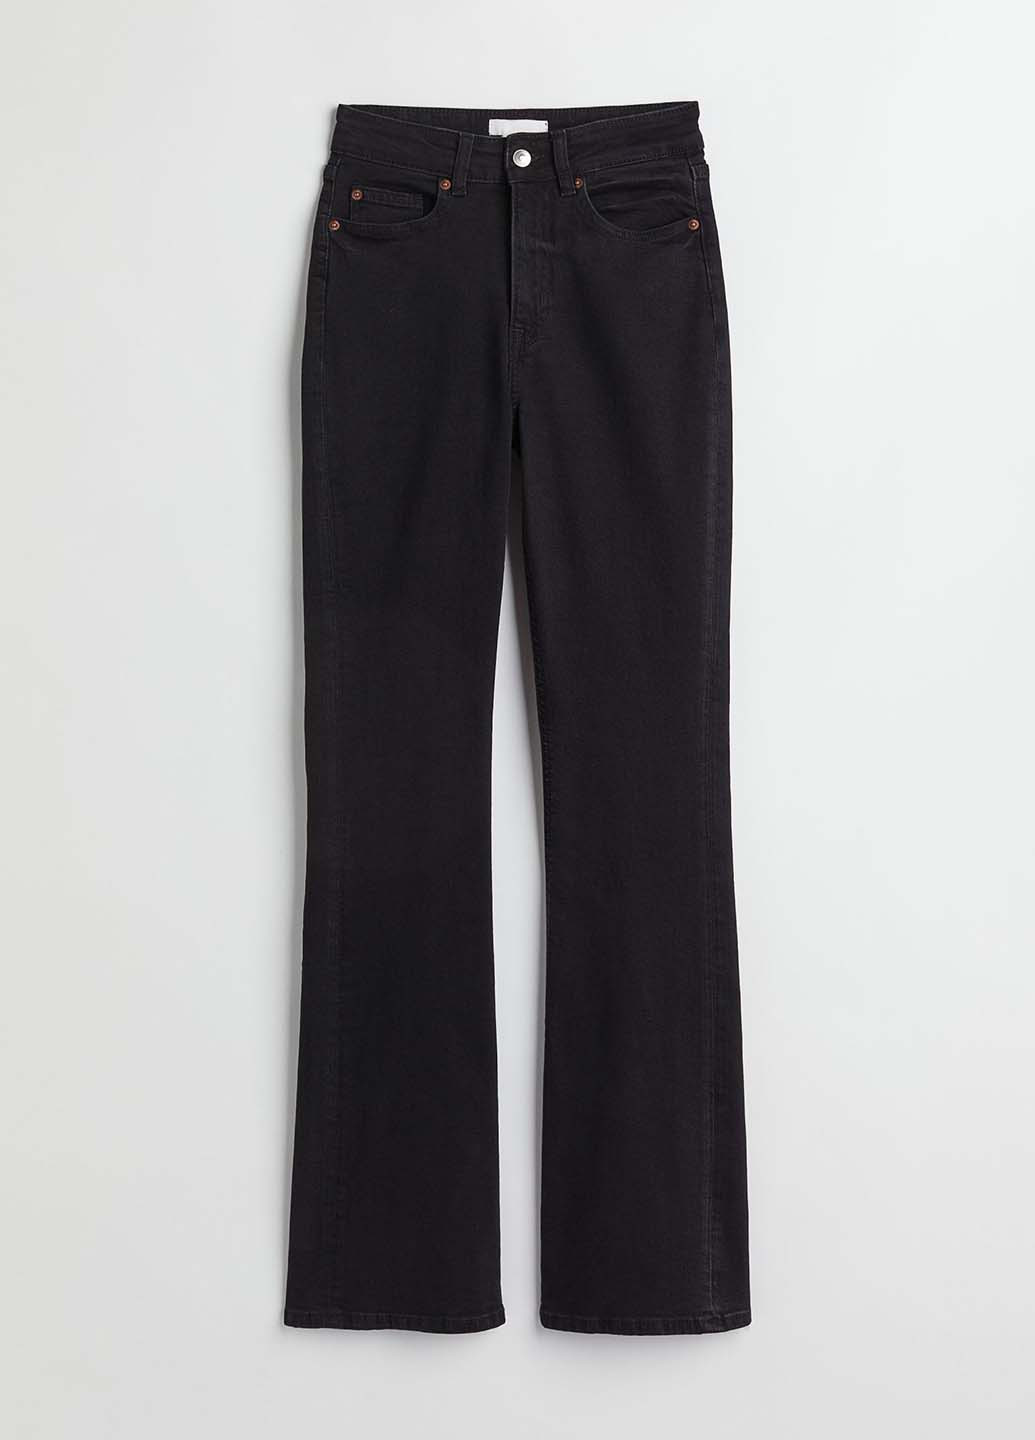 Черные демисезонные буткат фит джинсы H&M